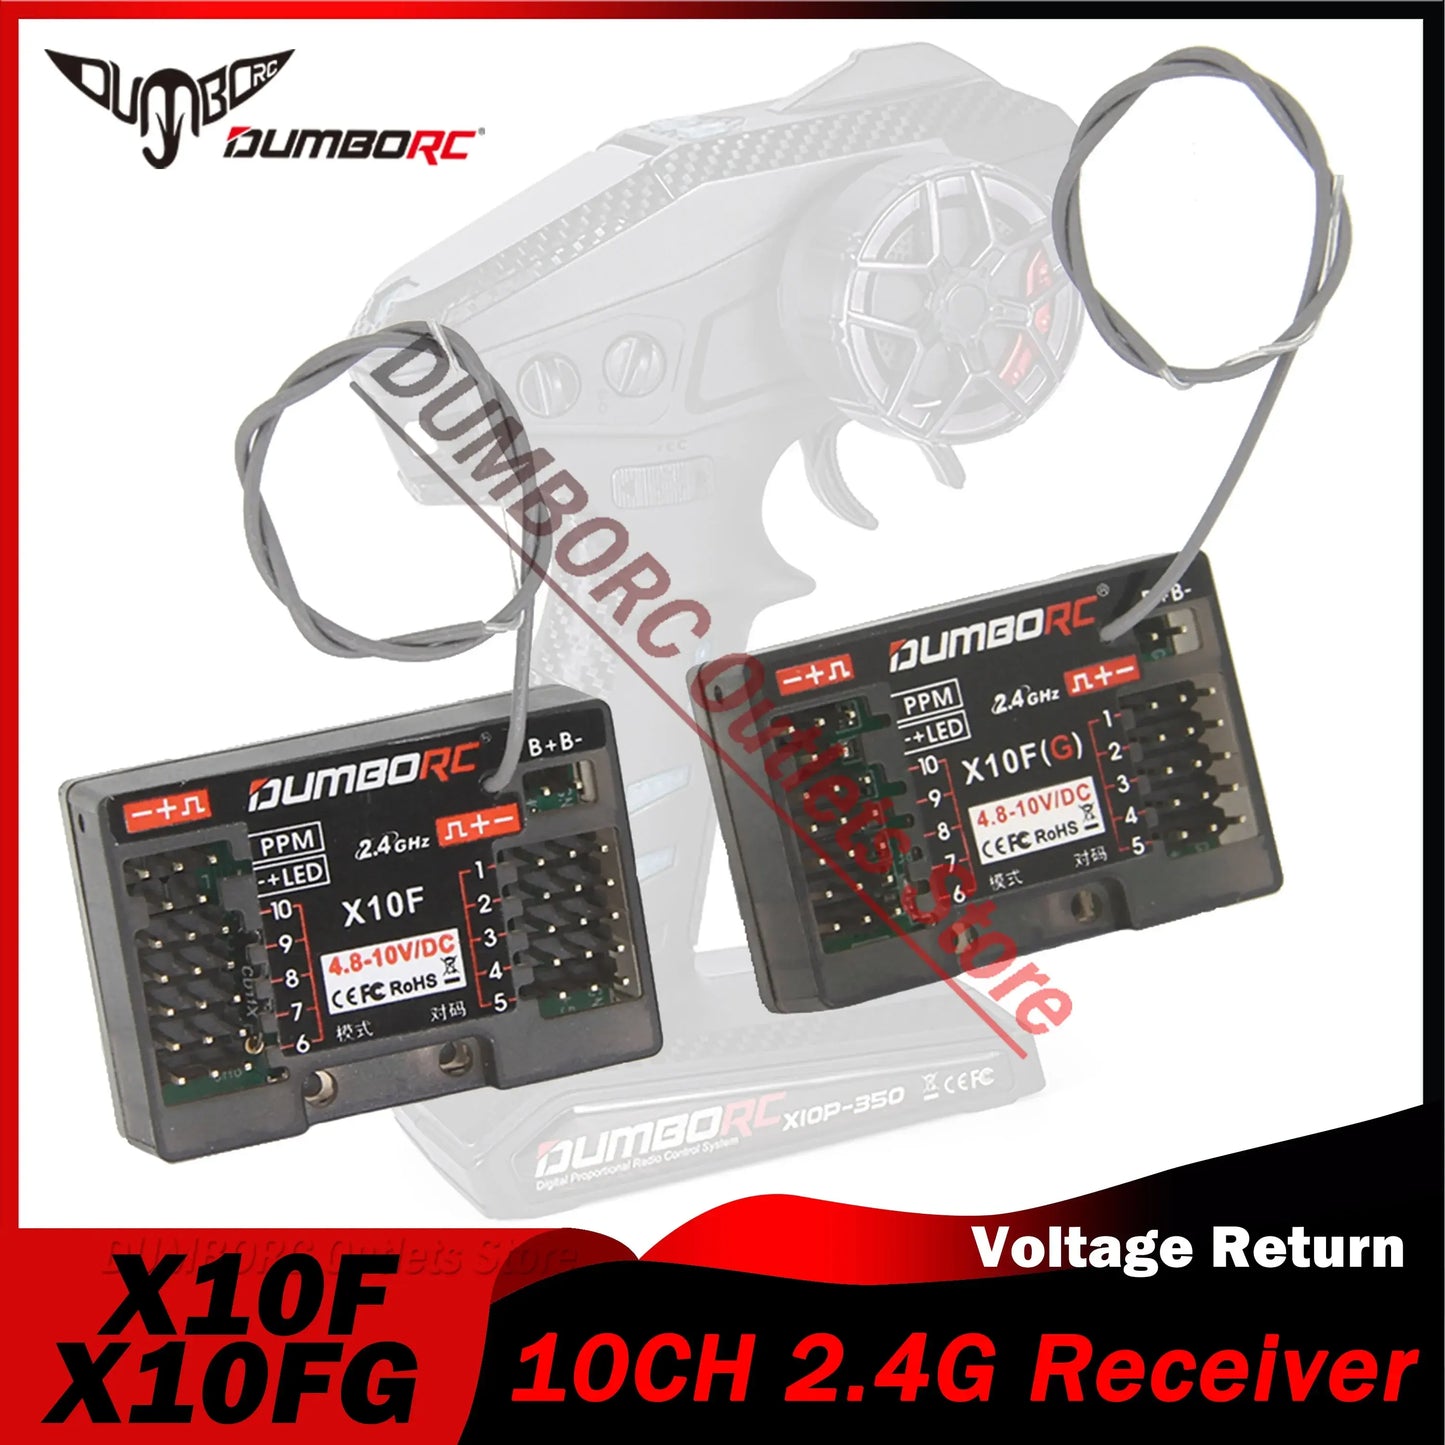 DUMBORC X10F X10FG 10CH 2.4G RC Receiver